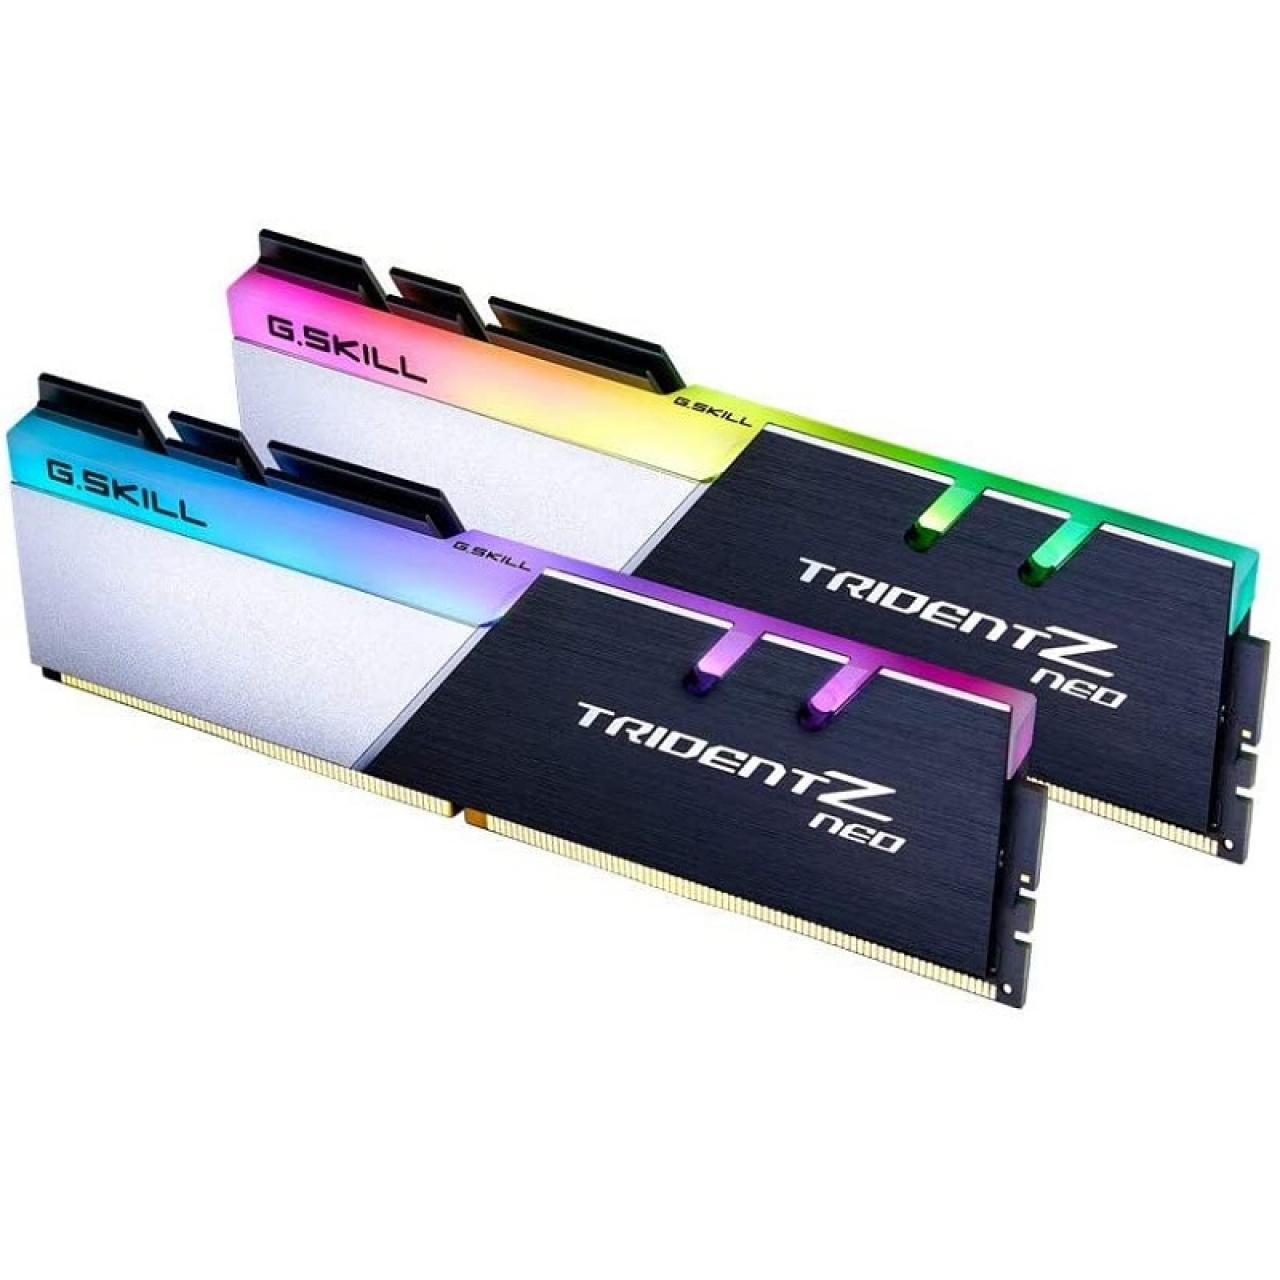 GSKILL 32GB (2X16GB) DDR4 3200MHZ CL16 RGB DUAL KIT PC RAM Trident Z F4-3200C16D-32GTZR